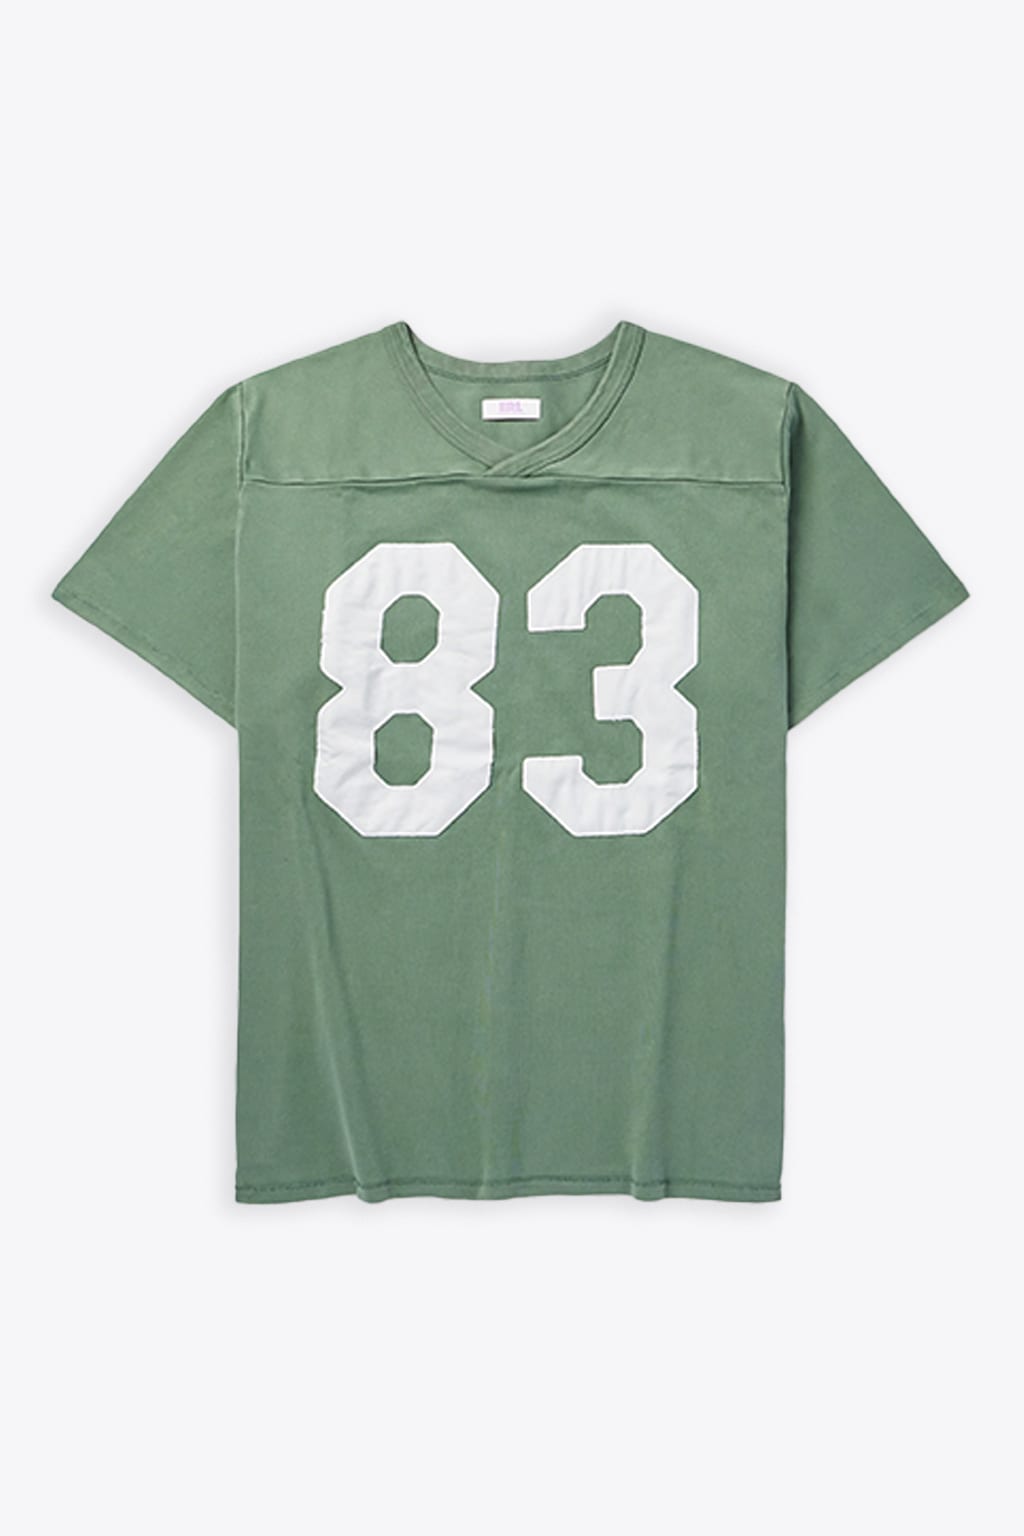 Unisex Football Shirt Knit Green cotton football t-shirt - Unisex football shirt knit